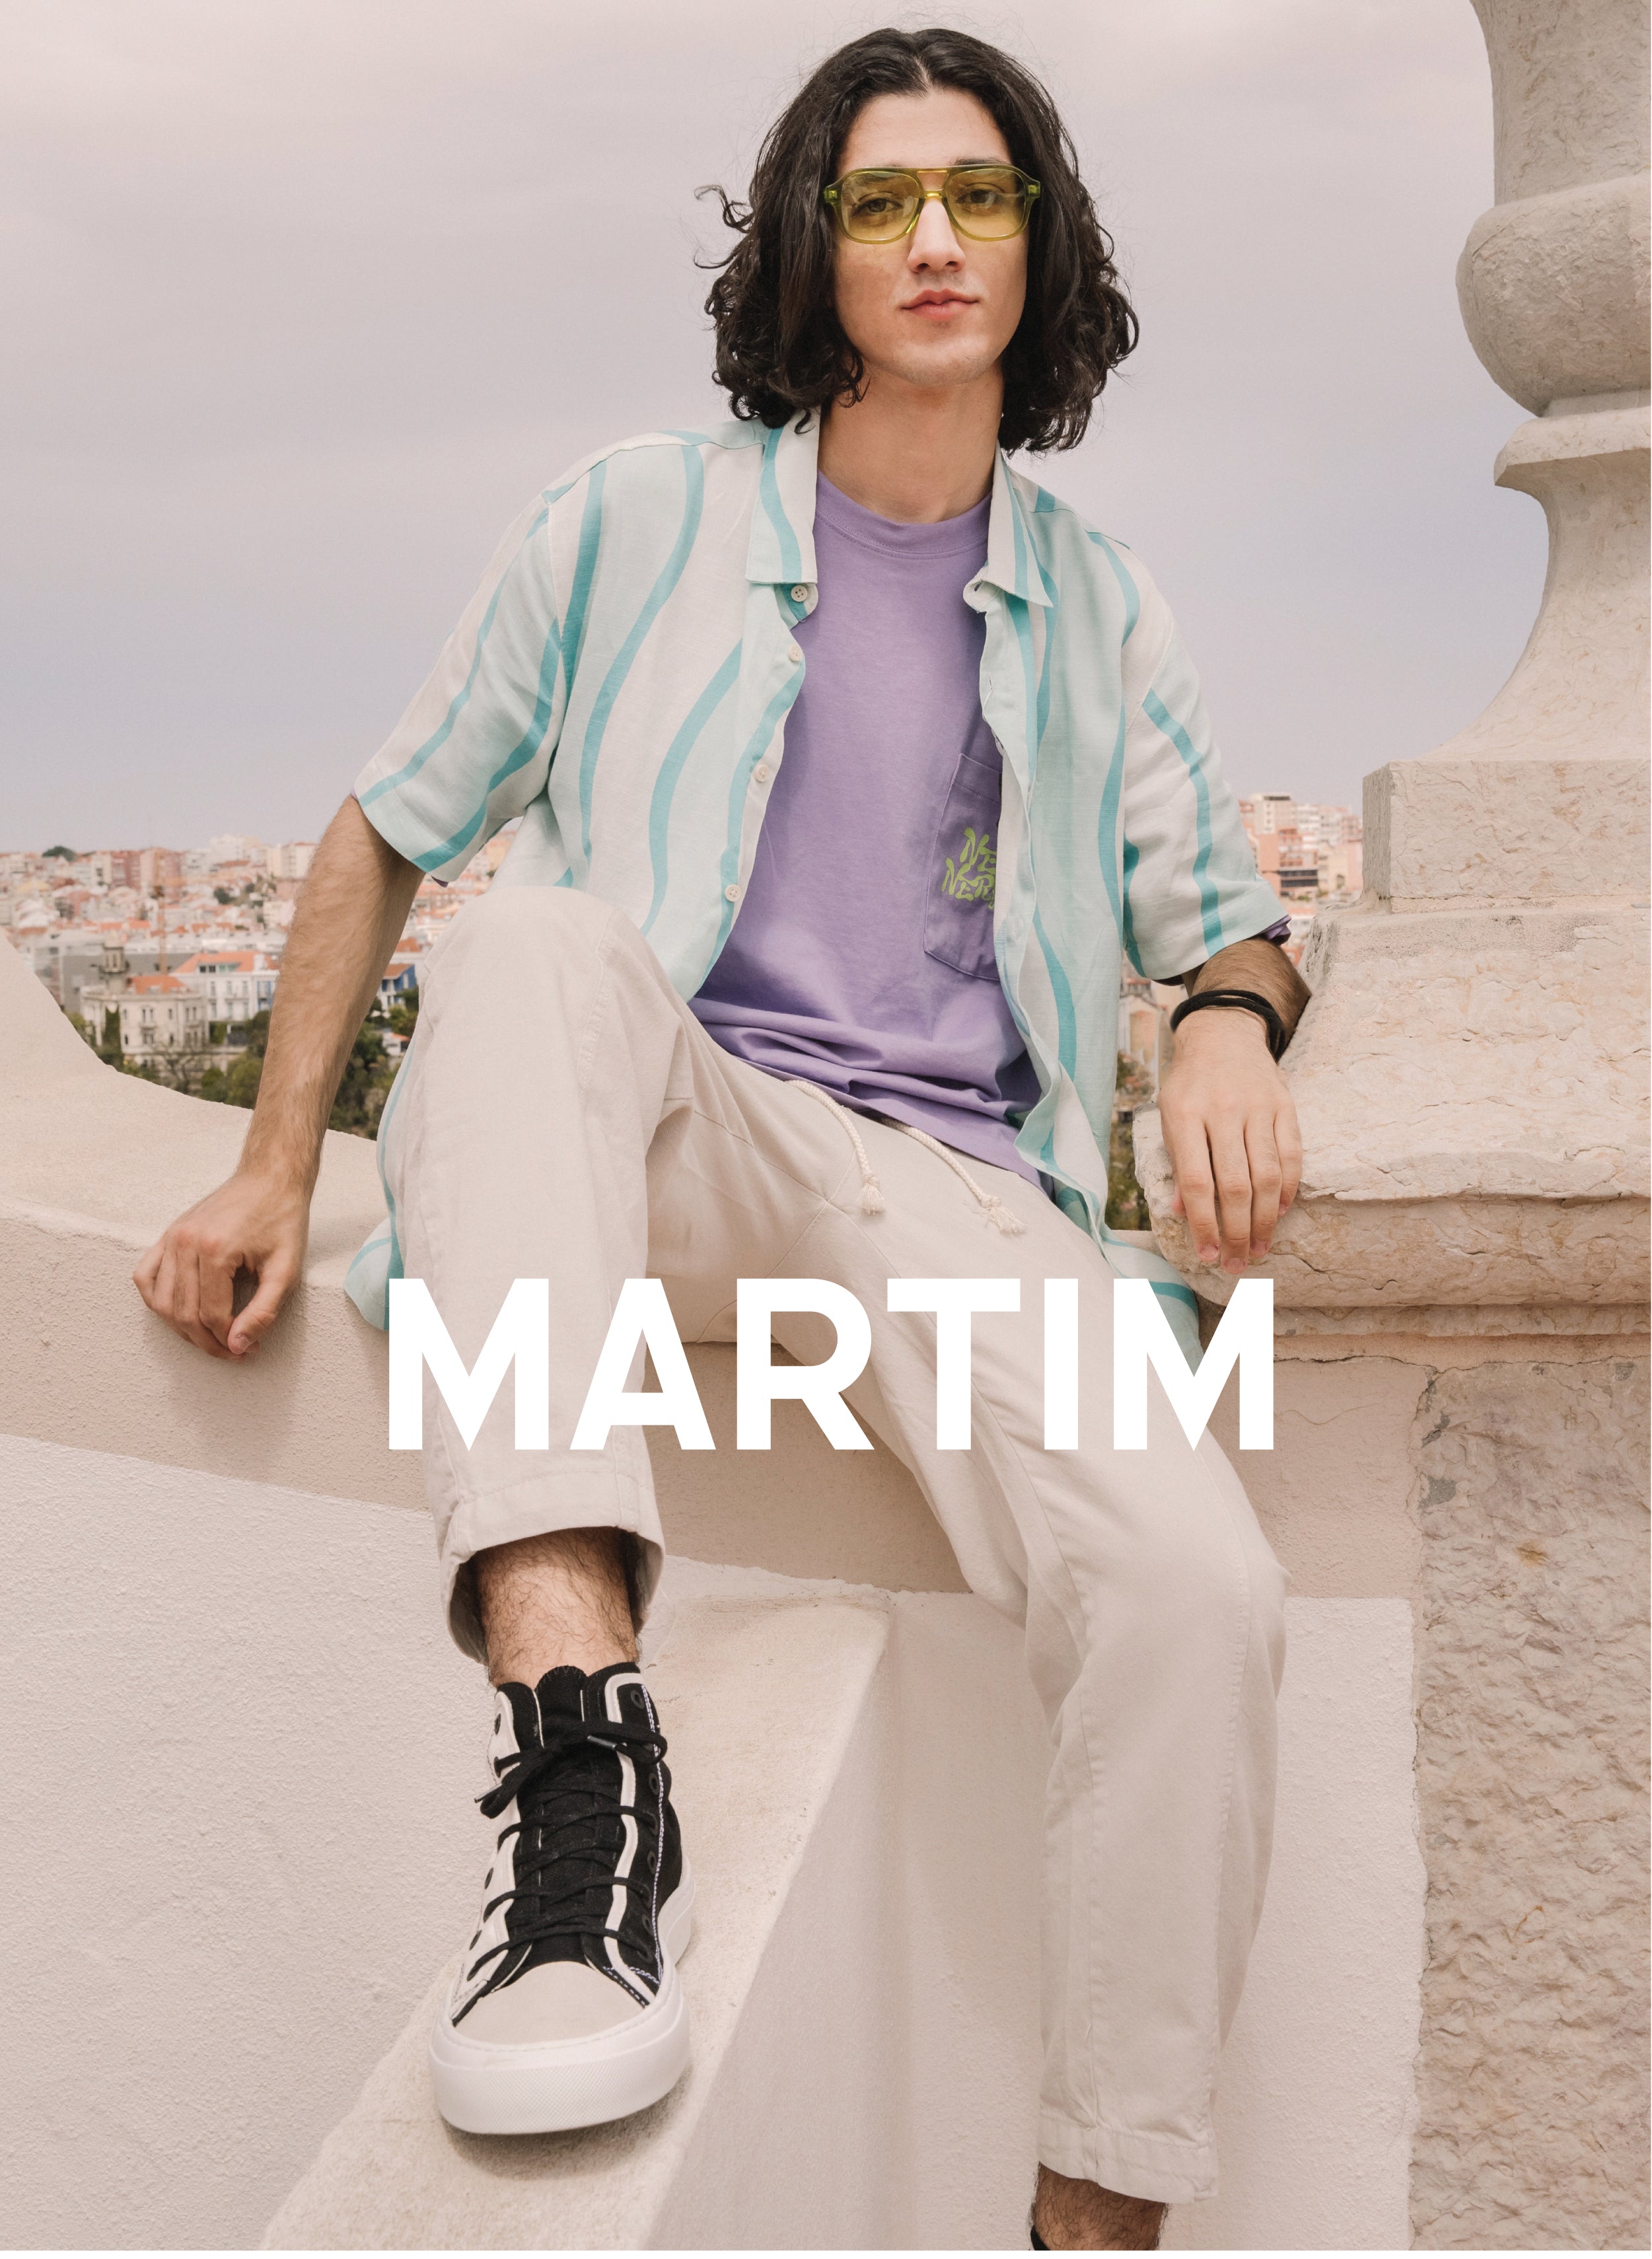 Martim seduto su un muro con un paesaggio, indossando Diverge sneakers, promuovendo l'impatto sociale e le calzature personalizzate.  